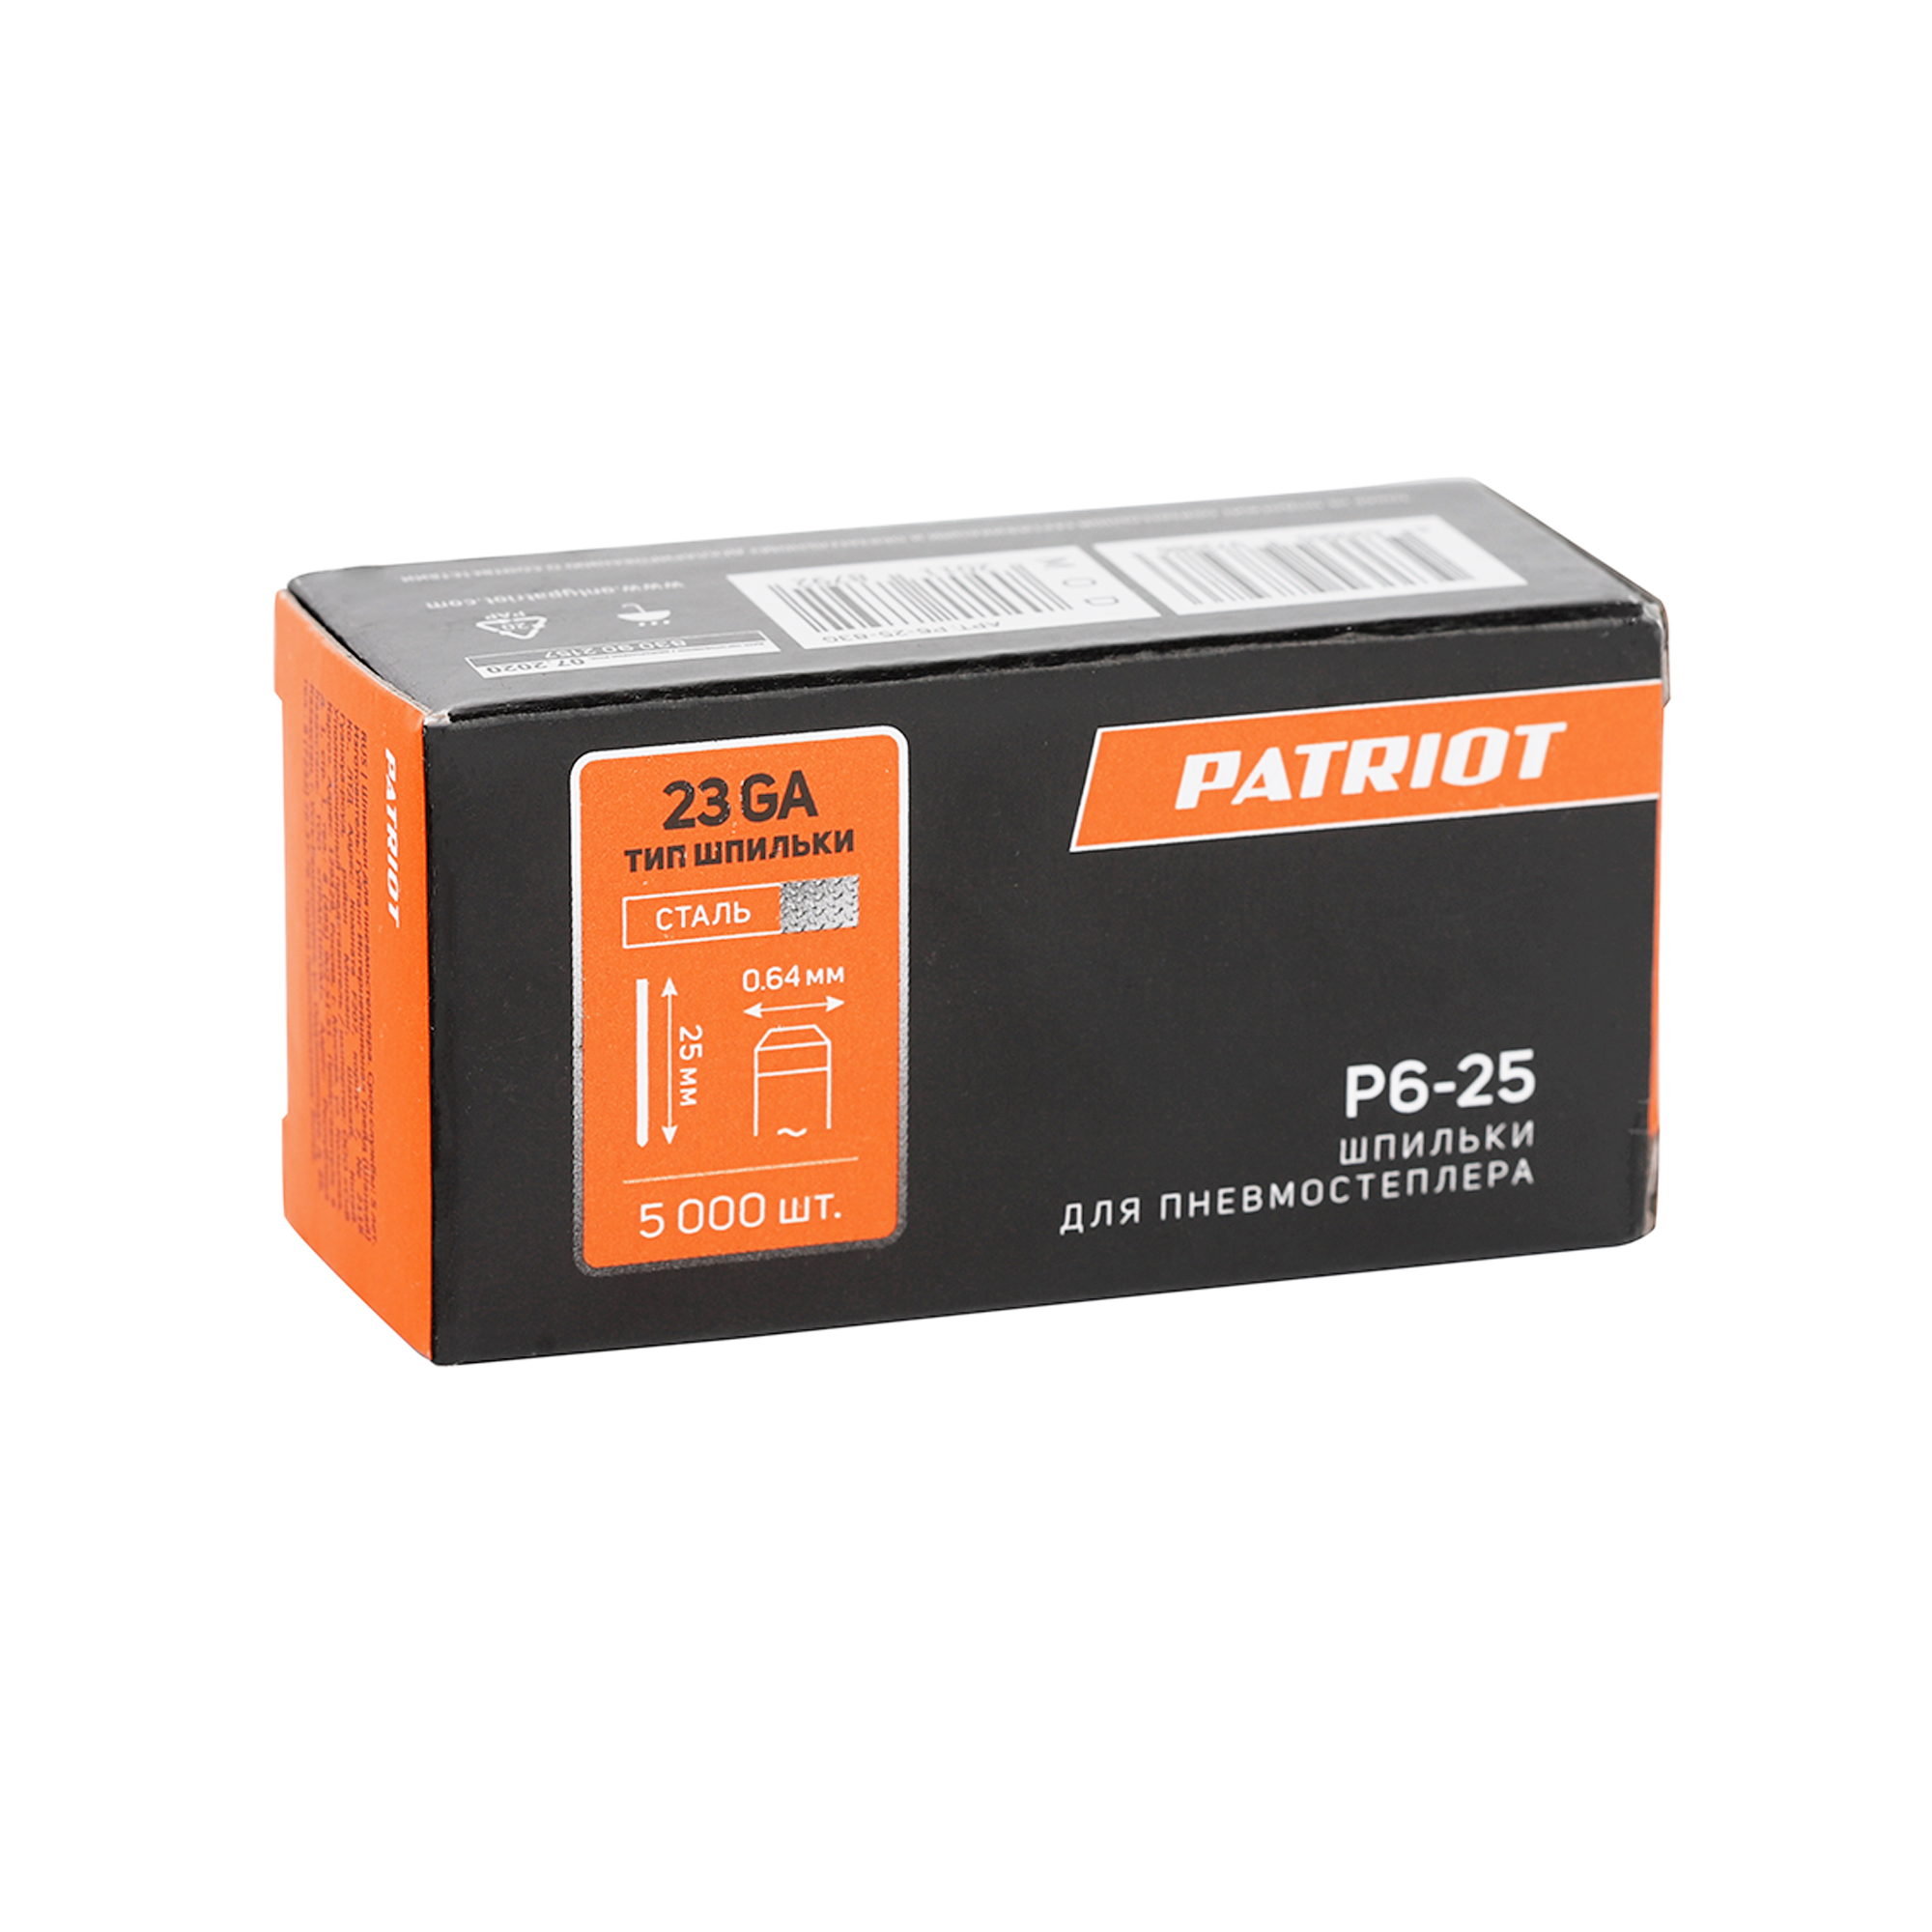 Шпильки PATRIOT P6-25 для пневмостеплера ASG 200